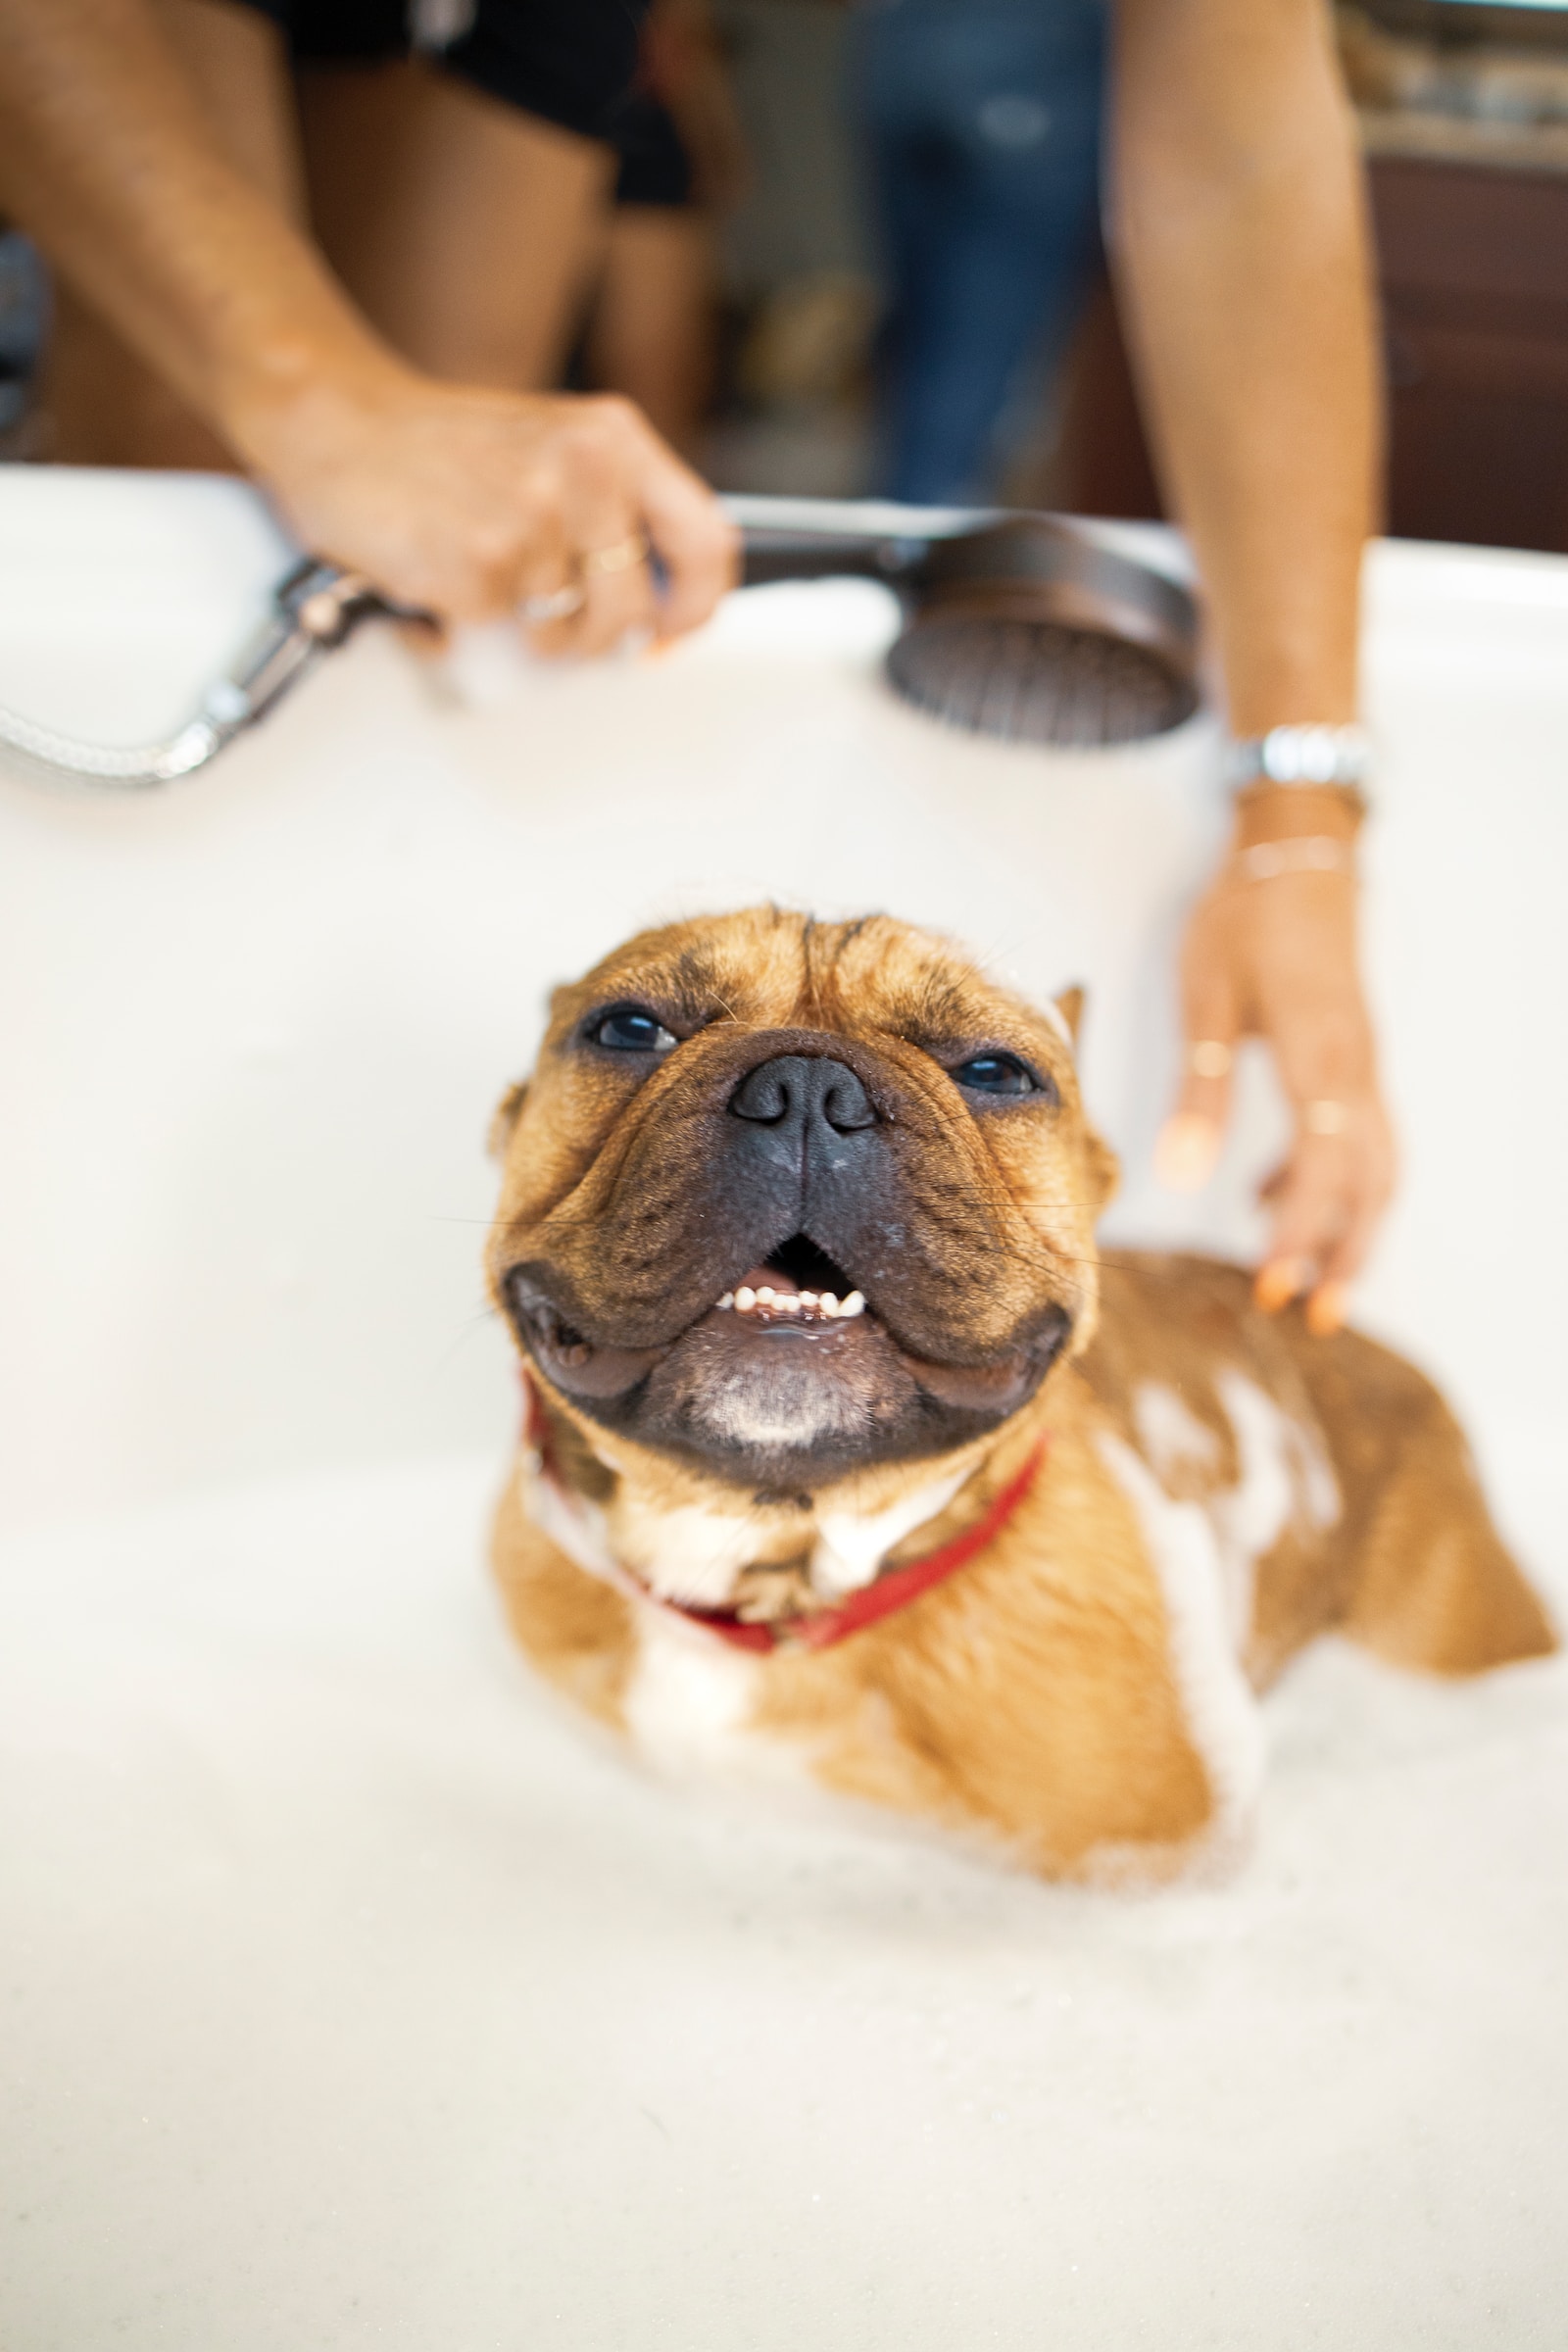 Pet Grooming, bathing